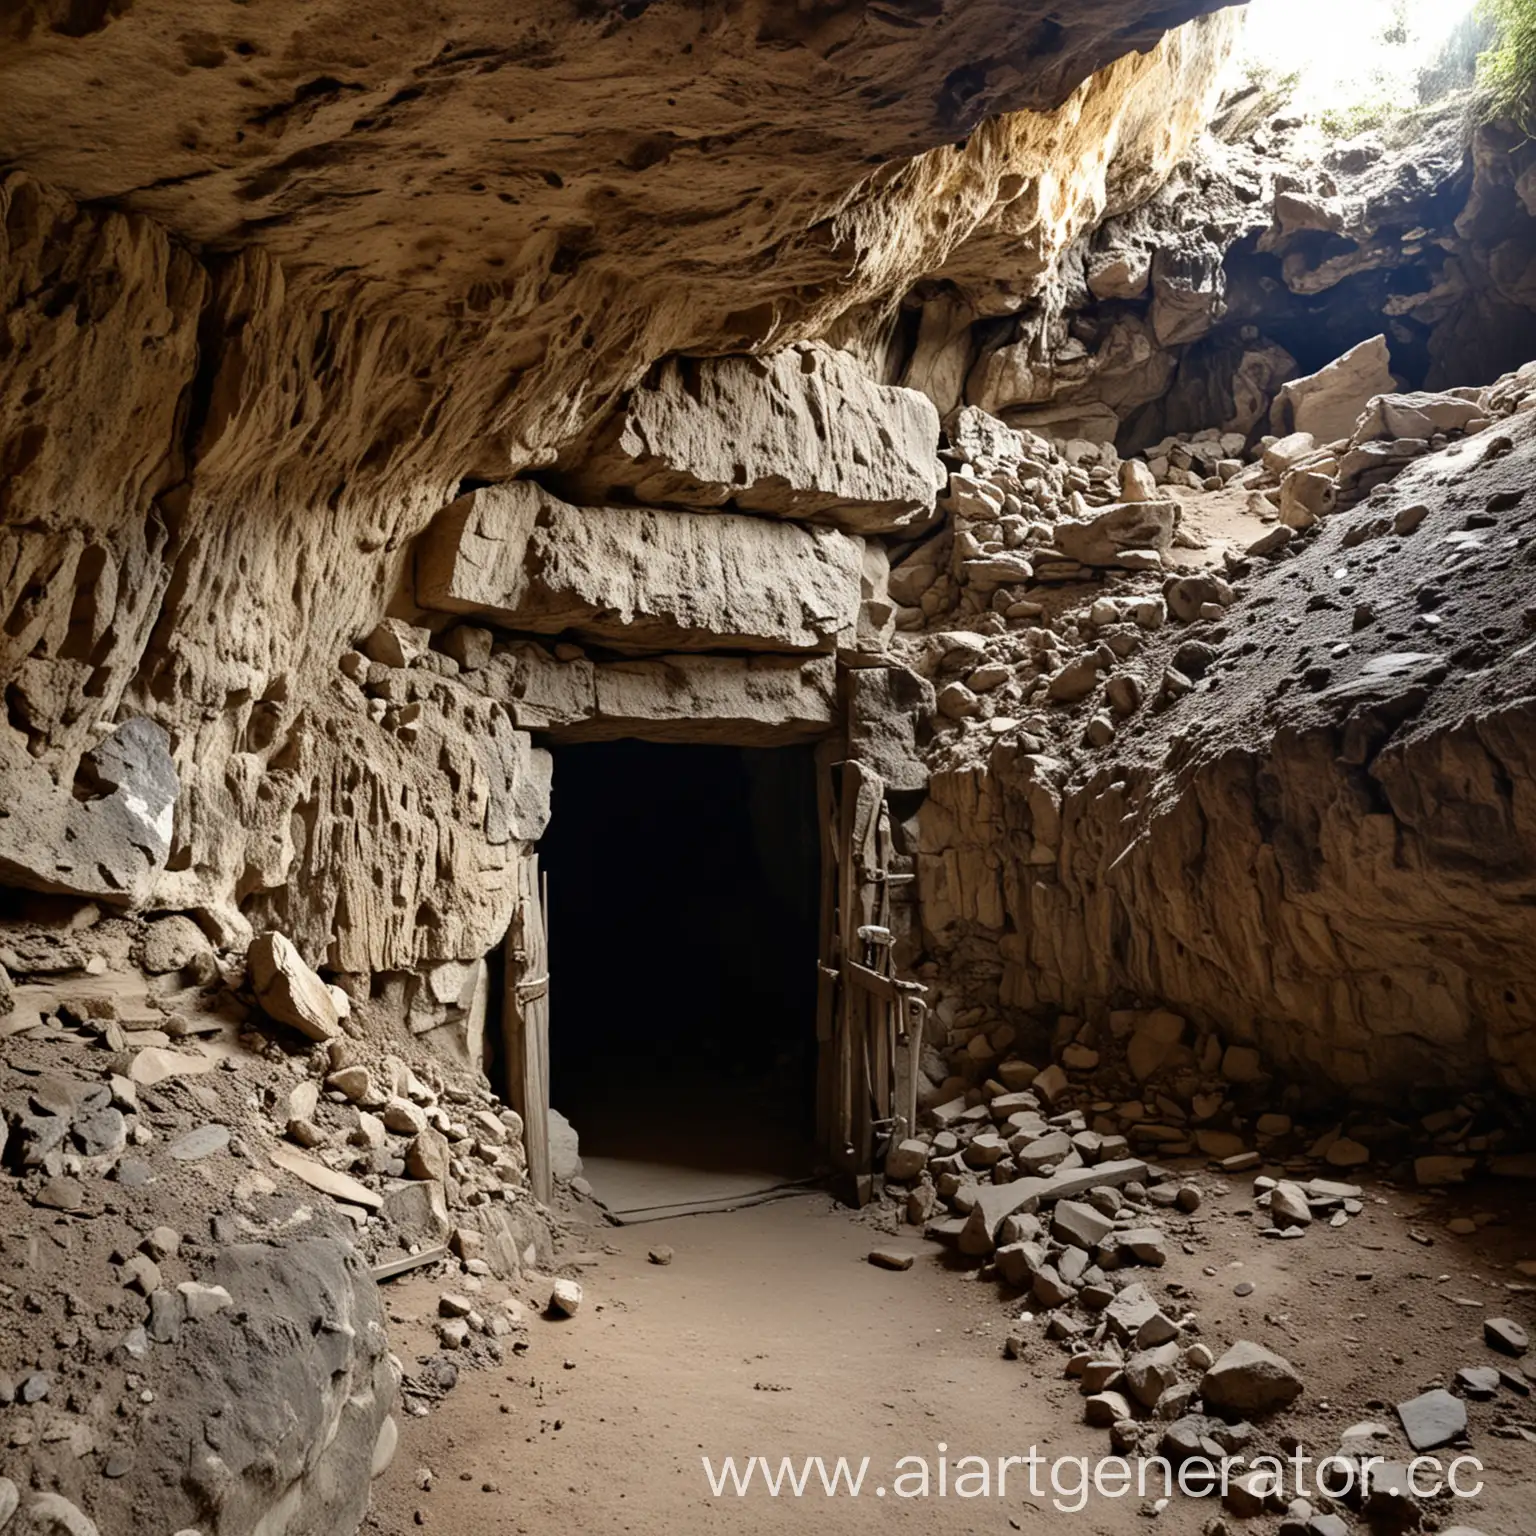 вход в пещеру. Внутри пещеры есть два прохода спереди через которую ведет дверь и просто поворот направо